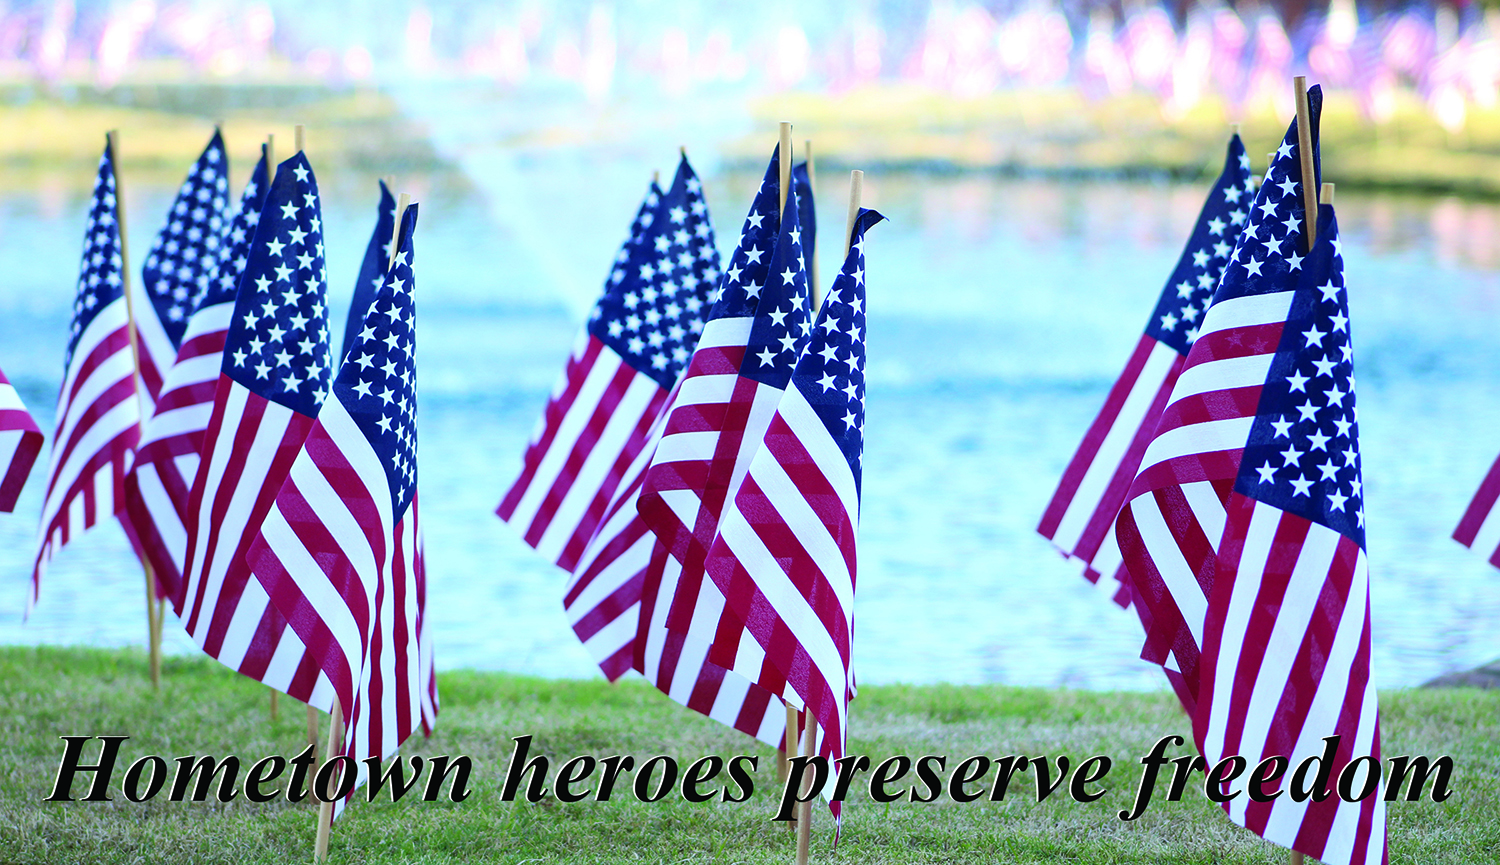 Hometown heroes preserve freedom